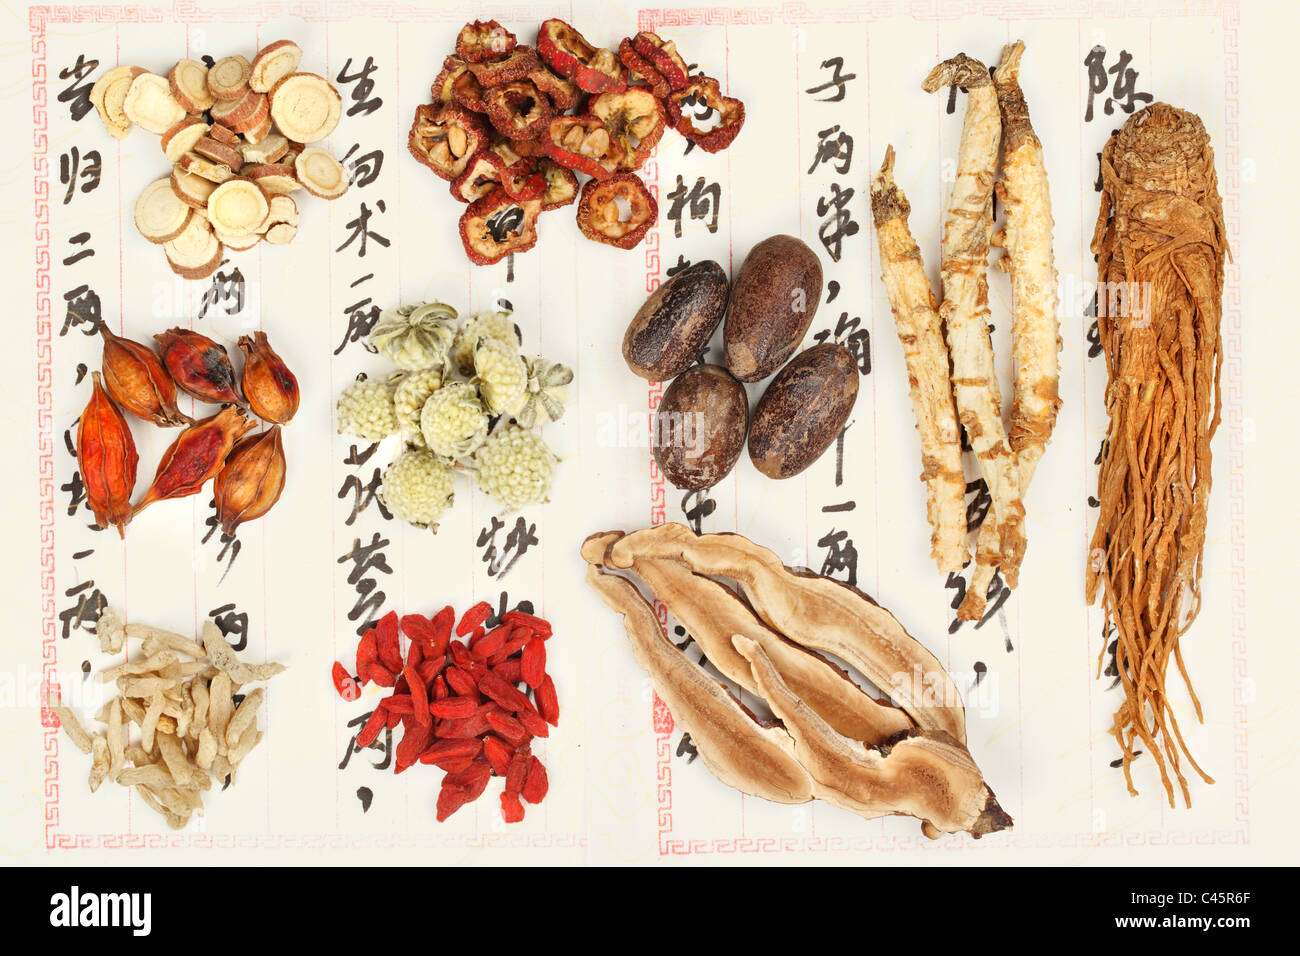 Sammlung der chinesischen Medizin Formel - chinesische Schriftzeichen sind Namen für die Kräuter in die Formel Stockfoto